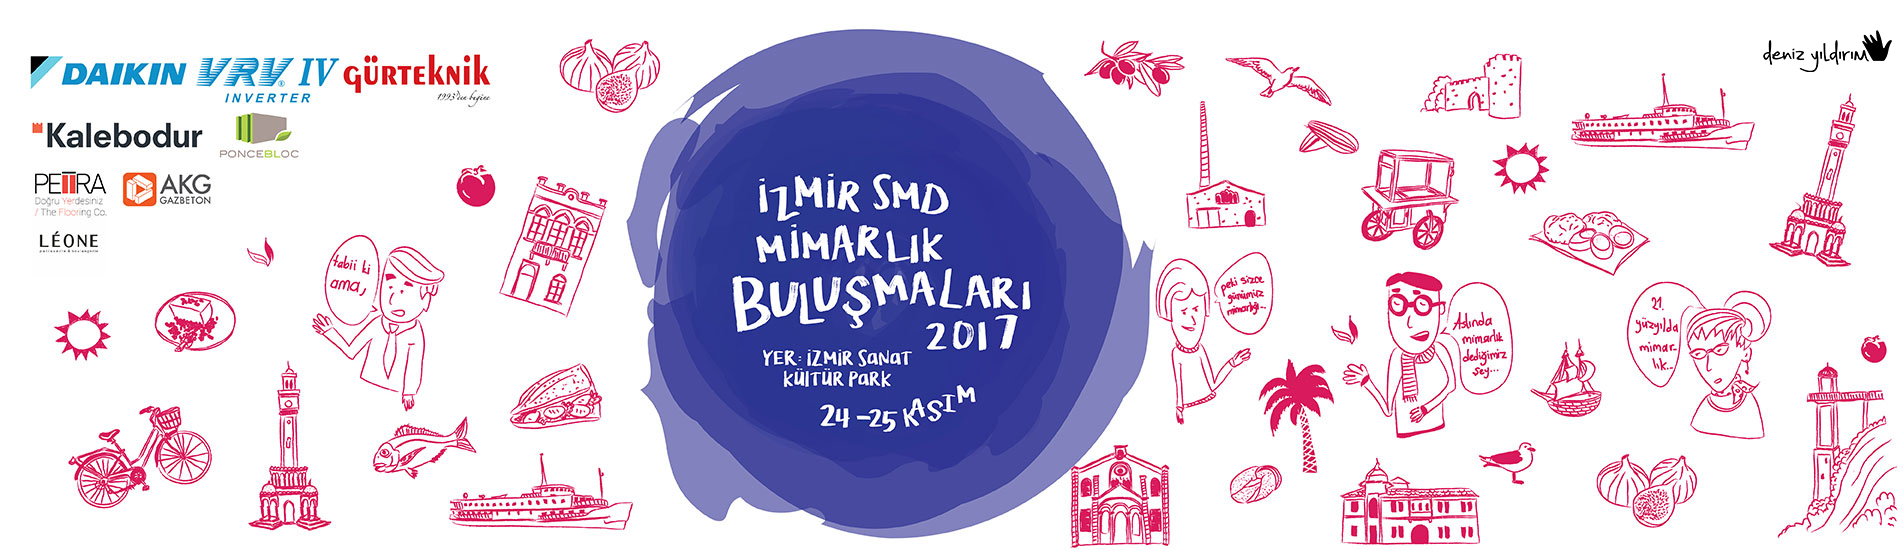 İzmir SMD Mimarlık Buluşmaları 2017 Programı